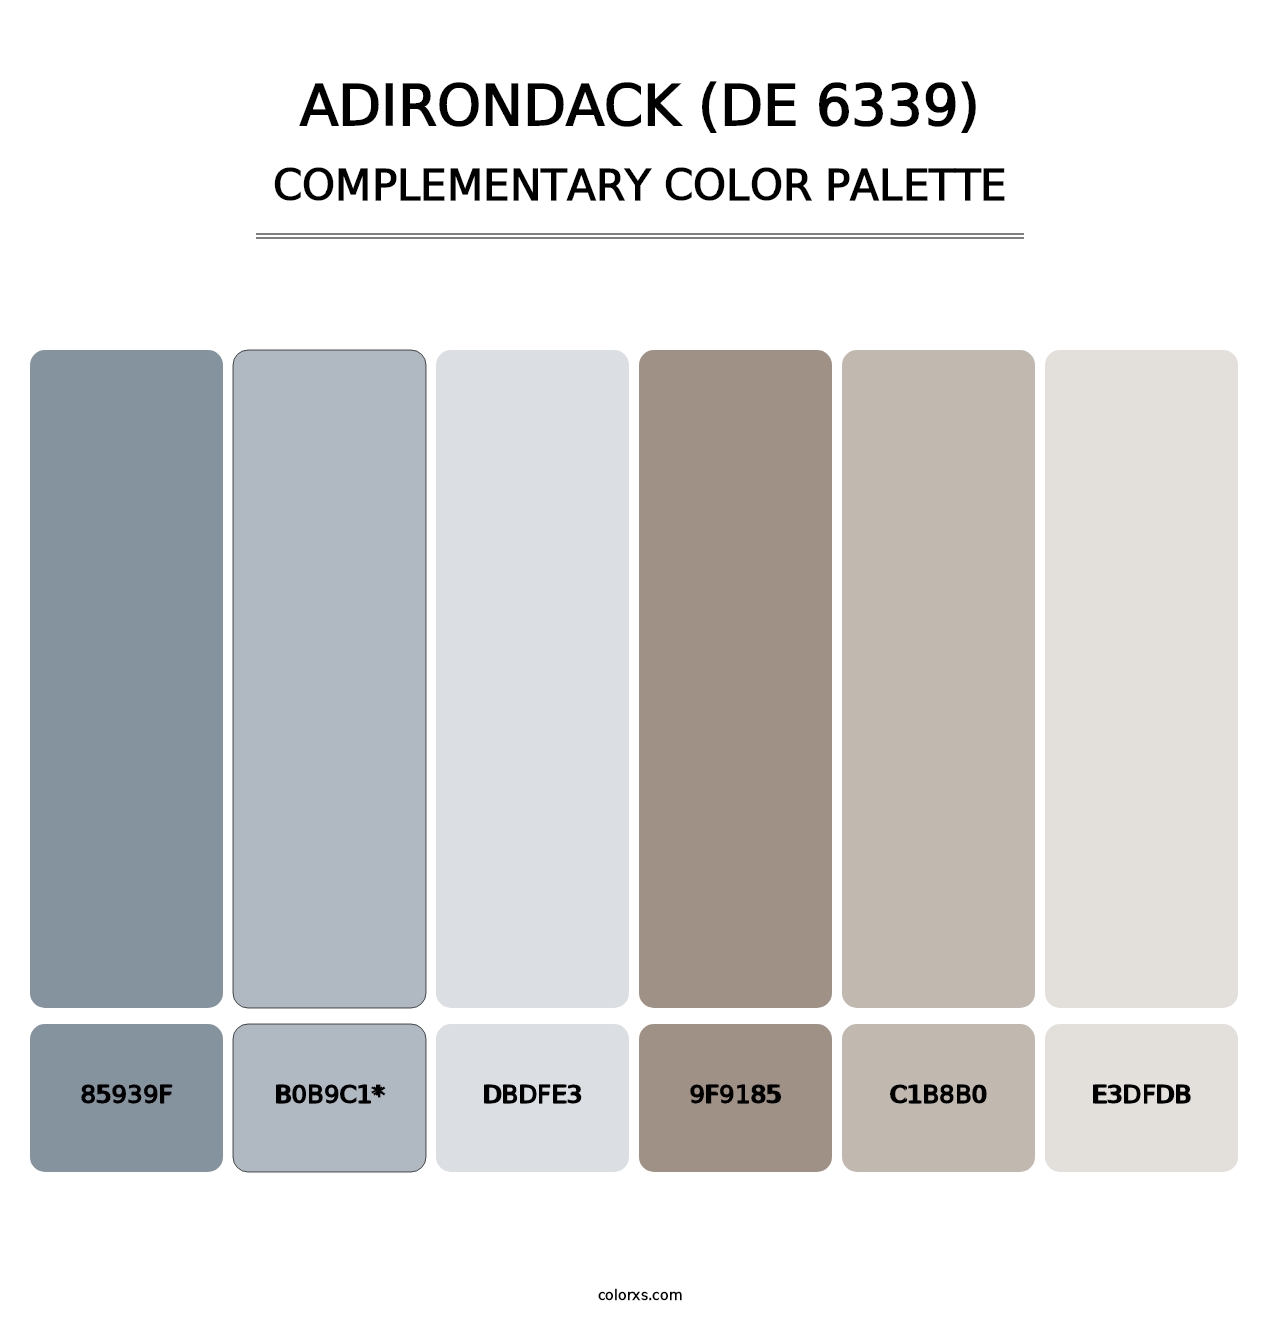 Adirondack (DE 6339) - Complementary Color Palette